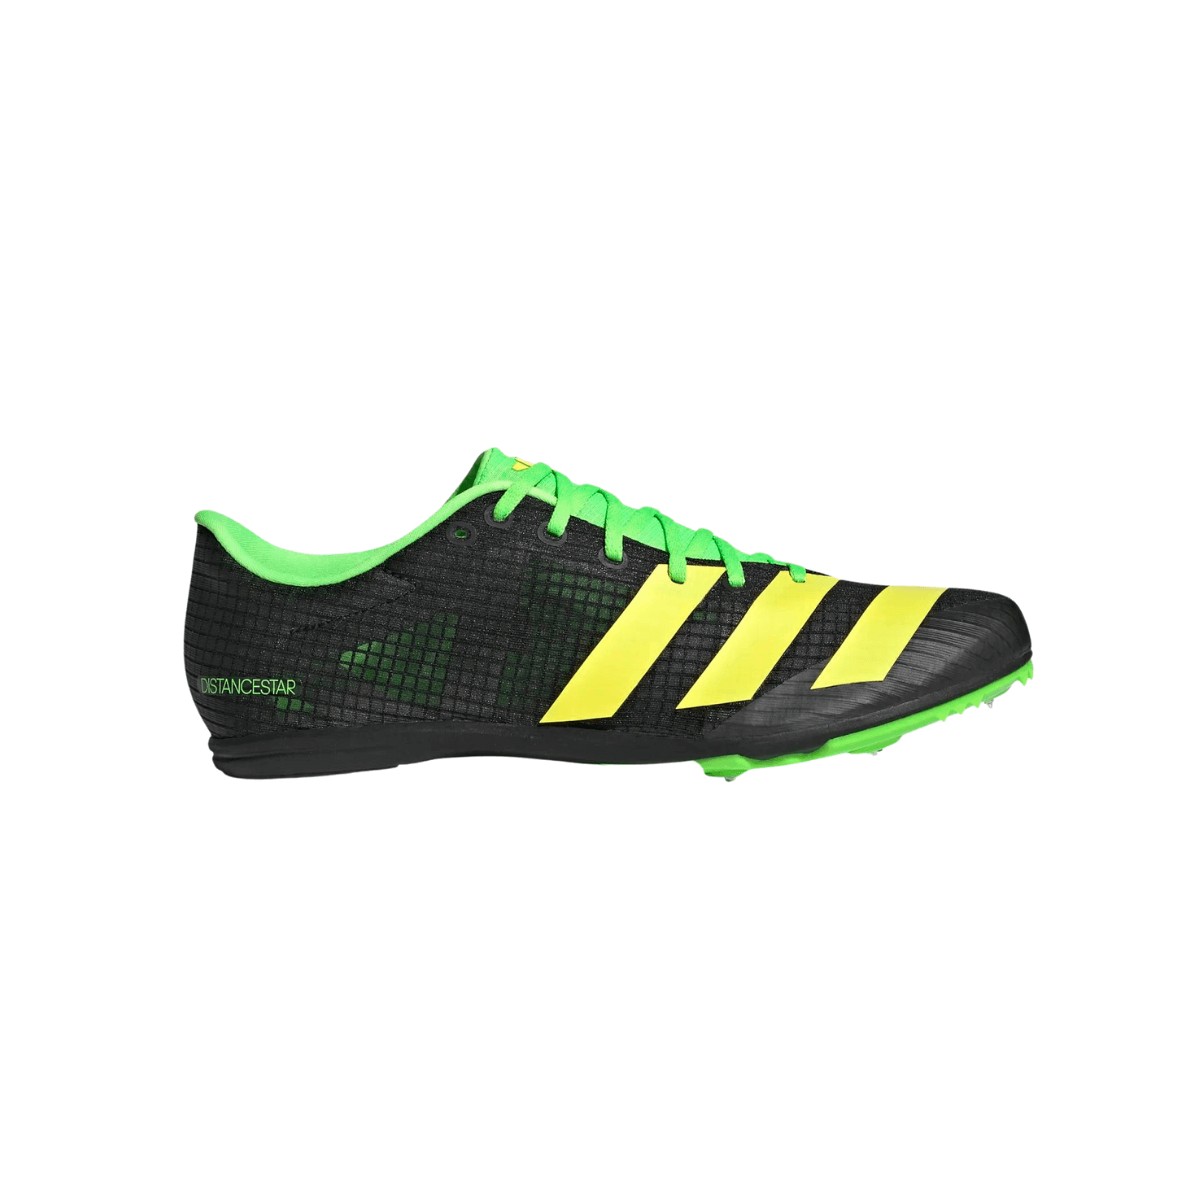 Zapatillas Adidas Distancestar Negro Verde AW22, Talla UK 6.5